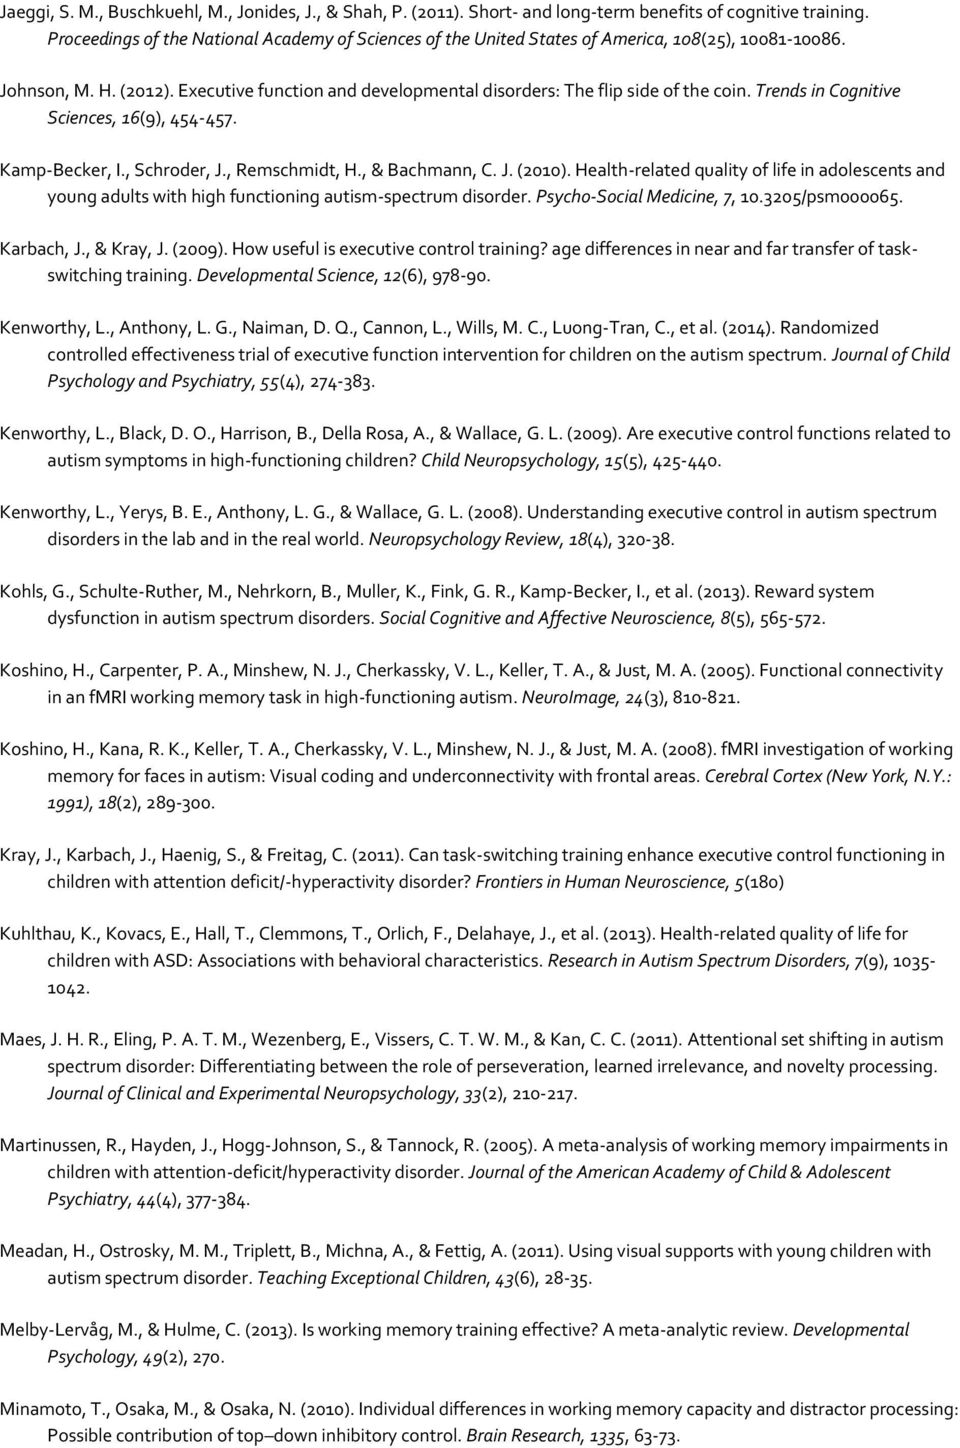 Trends in Cognitive Sciences, 16(9), 454-457. Kamp-Becker, I., Schroder, J., Remschmidt, H., & Bachmann, C. J. (2010).